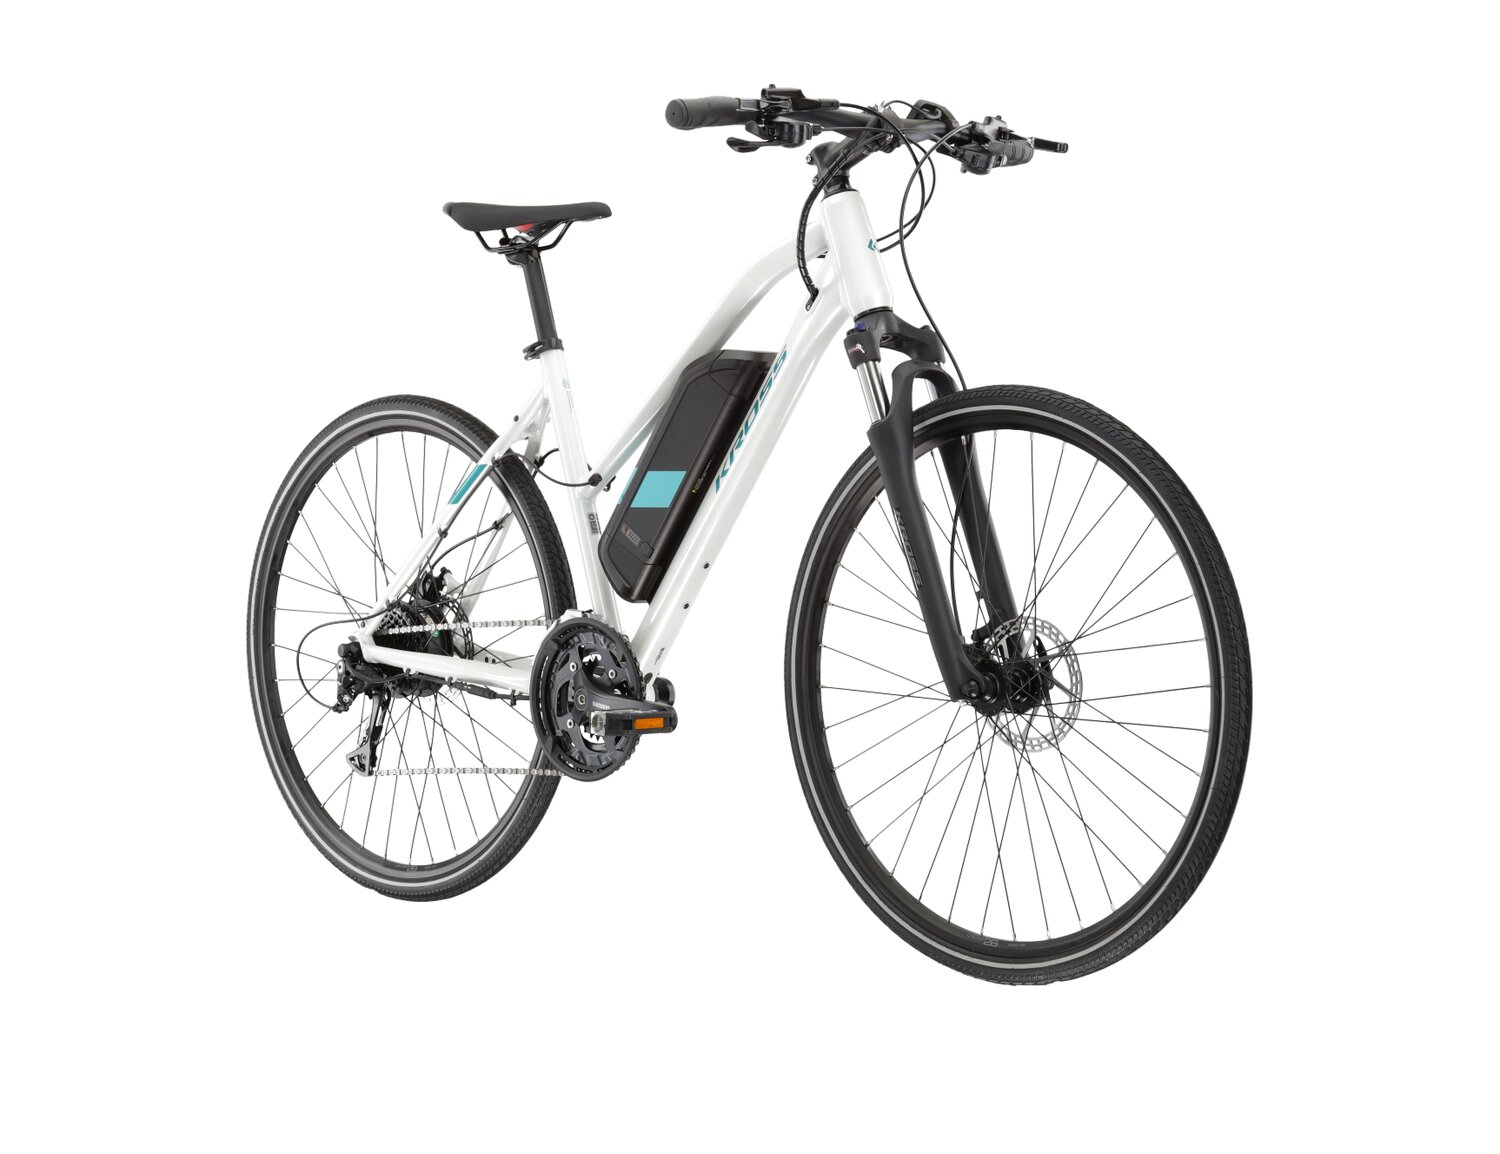  Elektryczny rower crossowy KROSS Evado Hybrid 1.0 522 Wh UNI na aluminiowej ramie w kolorze białym wyposażony w osprzęt Shimano i napęd elektryczny Bafang